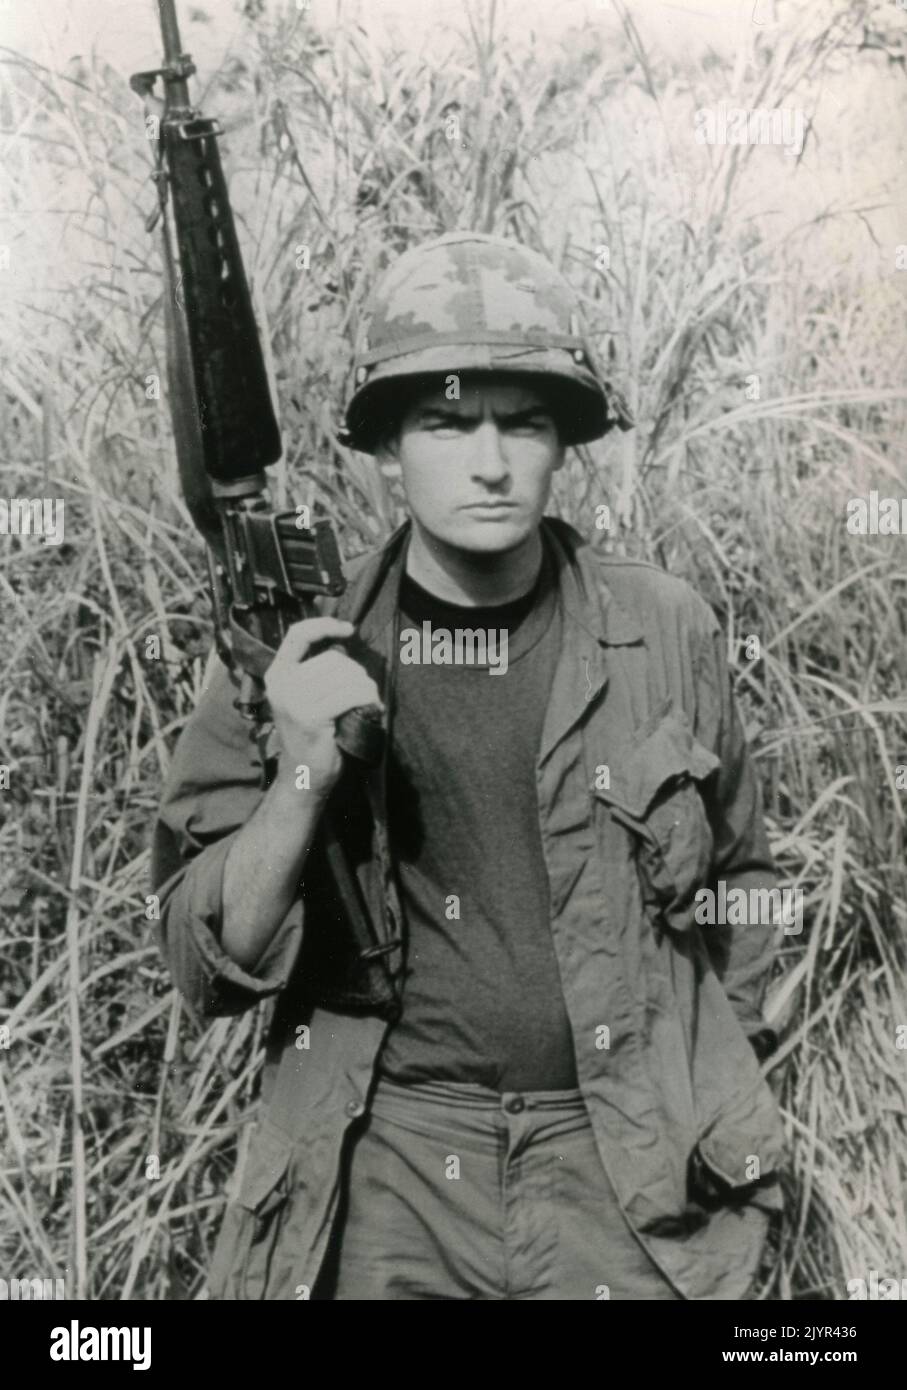 L'acteur américain Charlie Sheen dans le film Platoon, USA 1986 Banque D'Images